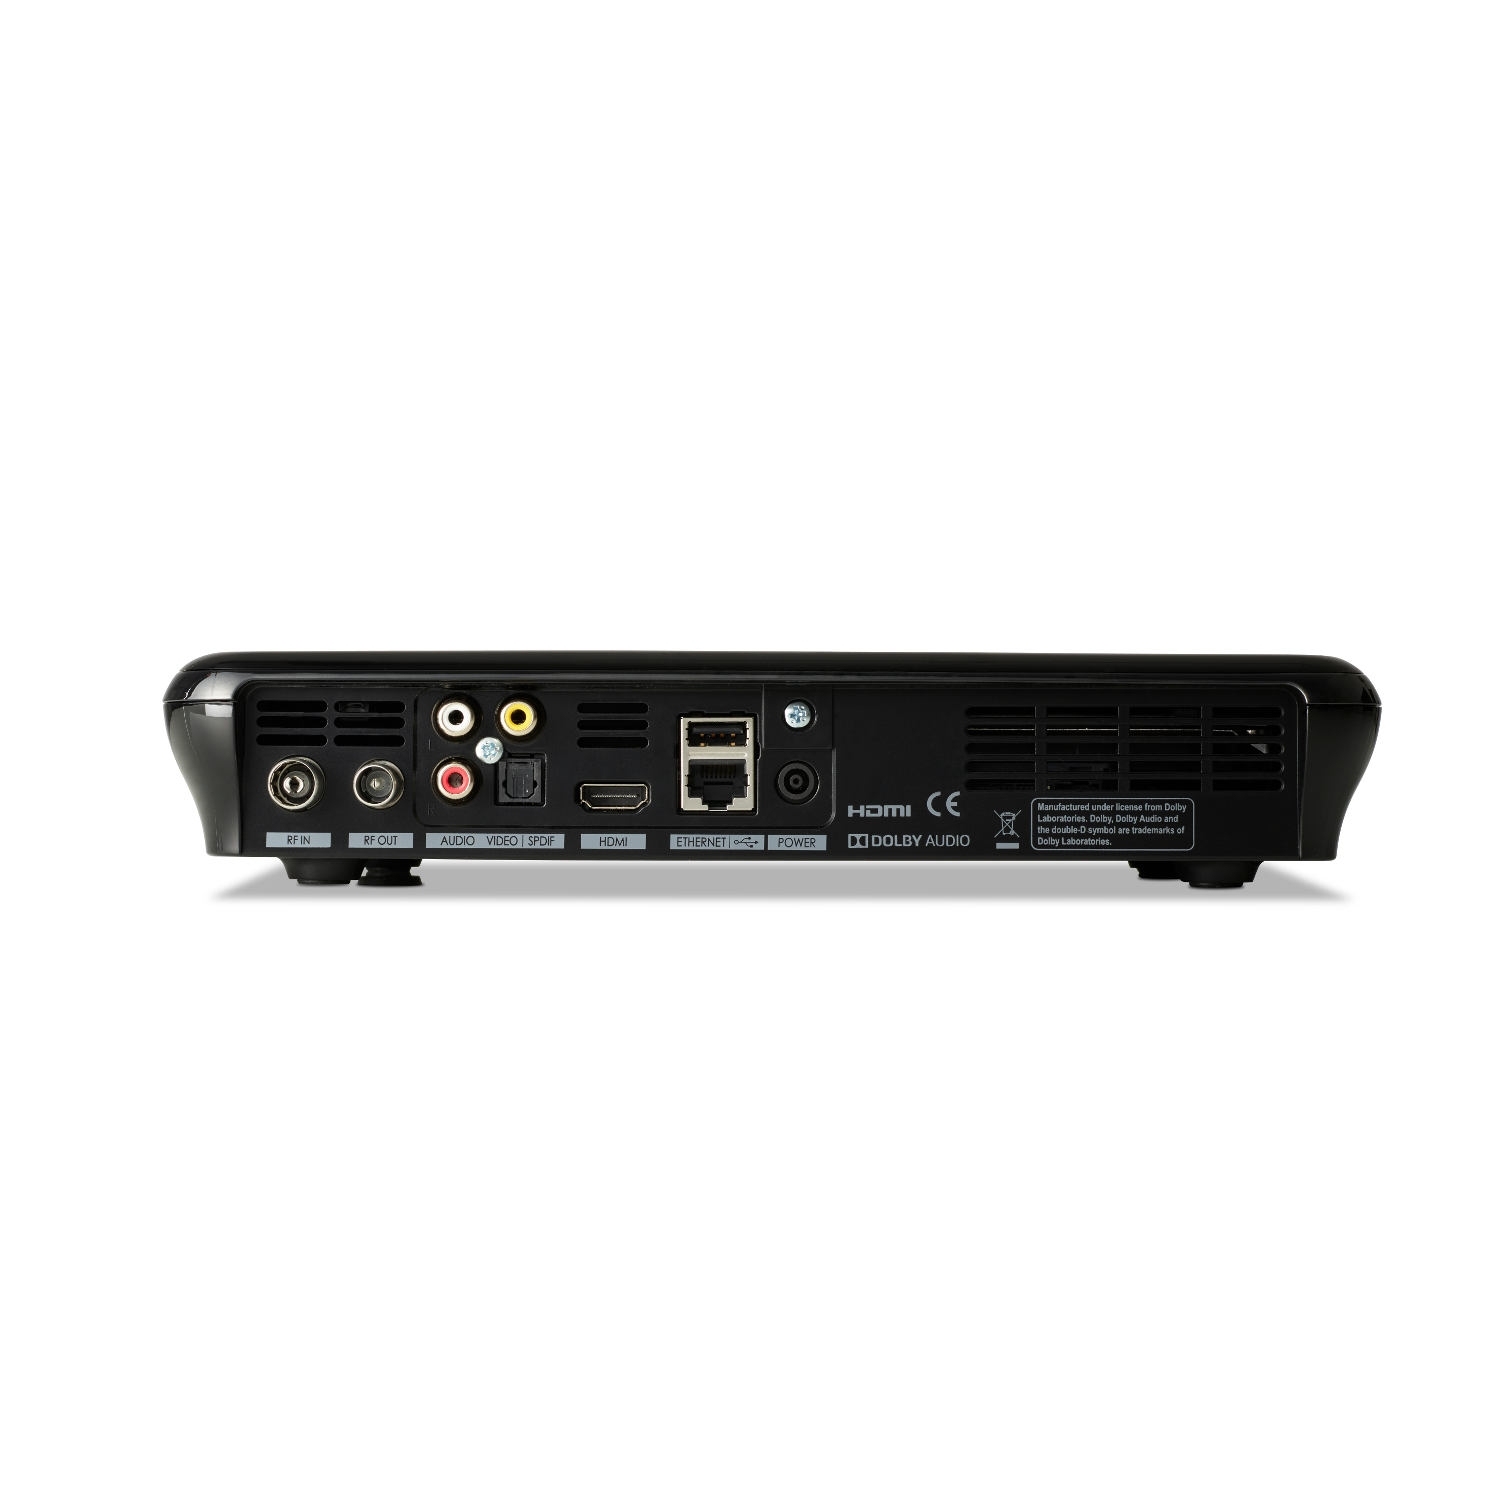 Humax FVP5000T 500GB Digital Video Recorder - 500 GB HDD-Freeview-HD- Smart- Black - 2